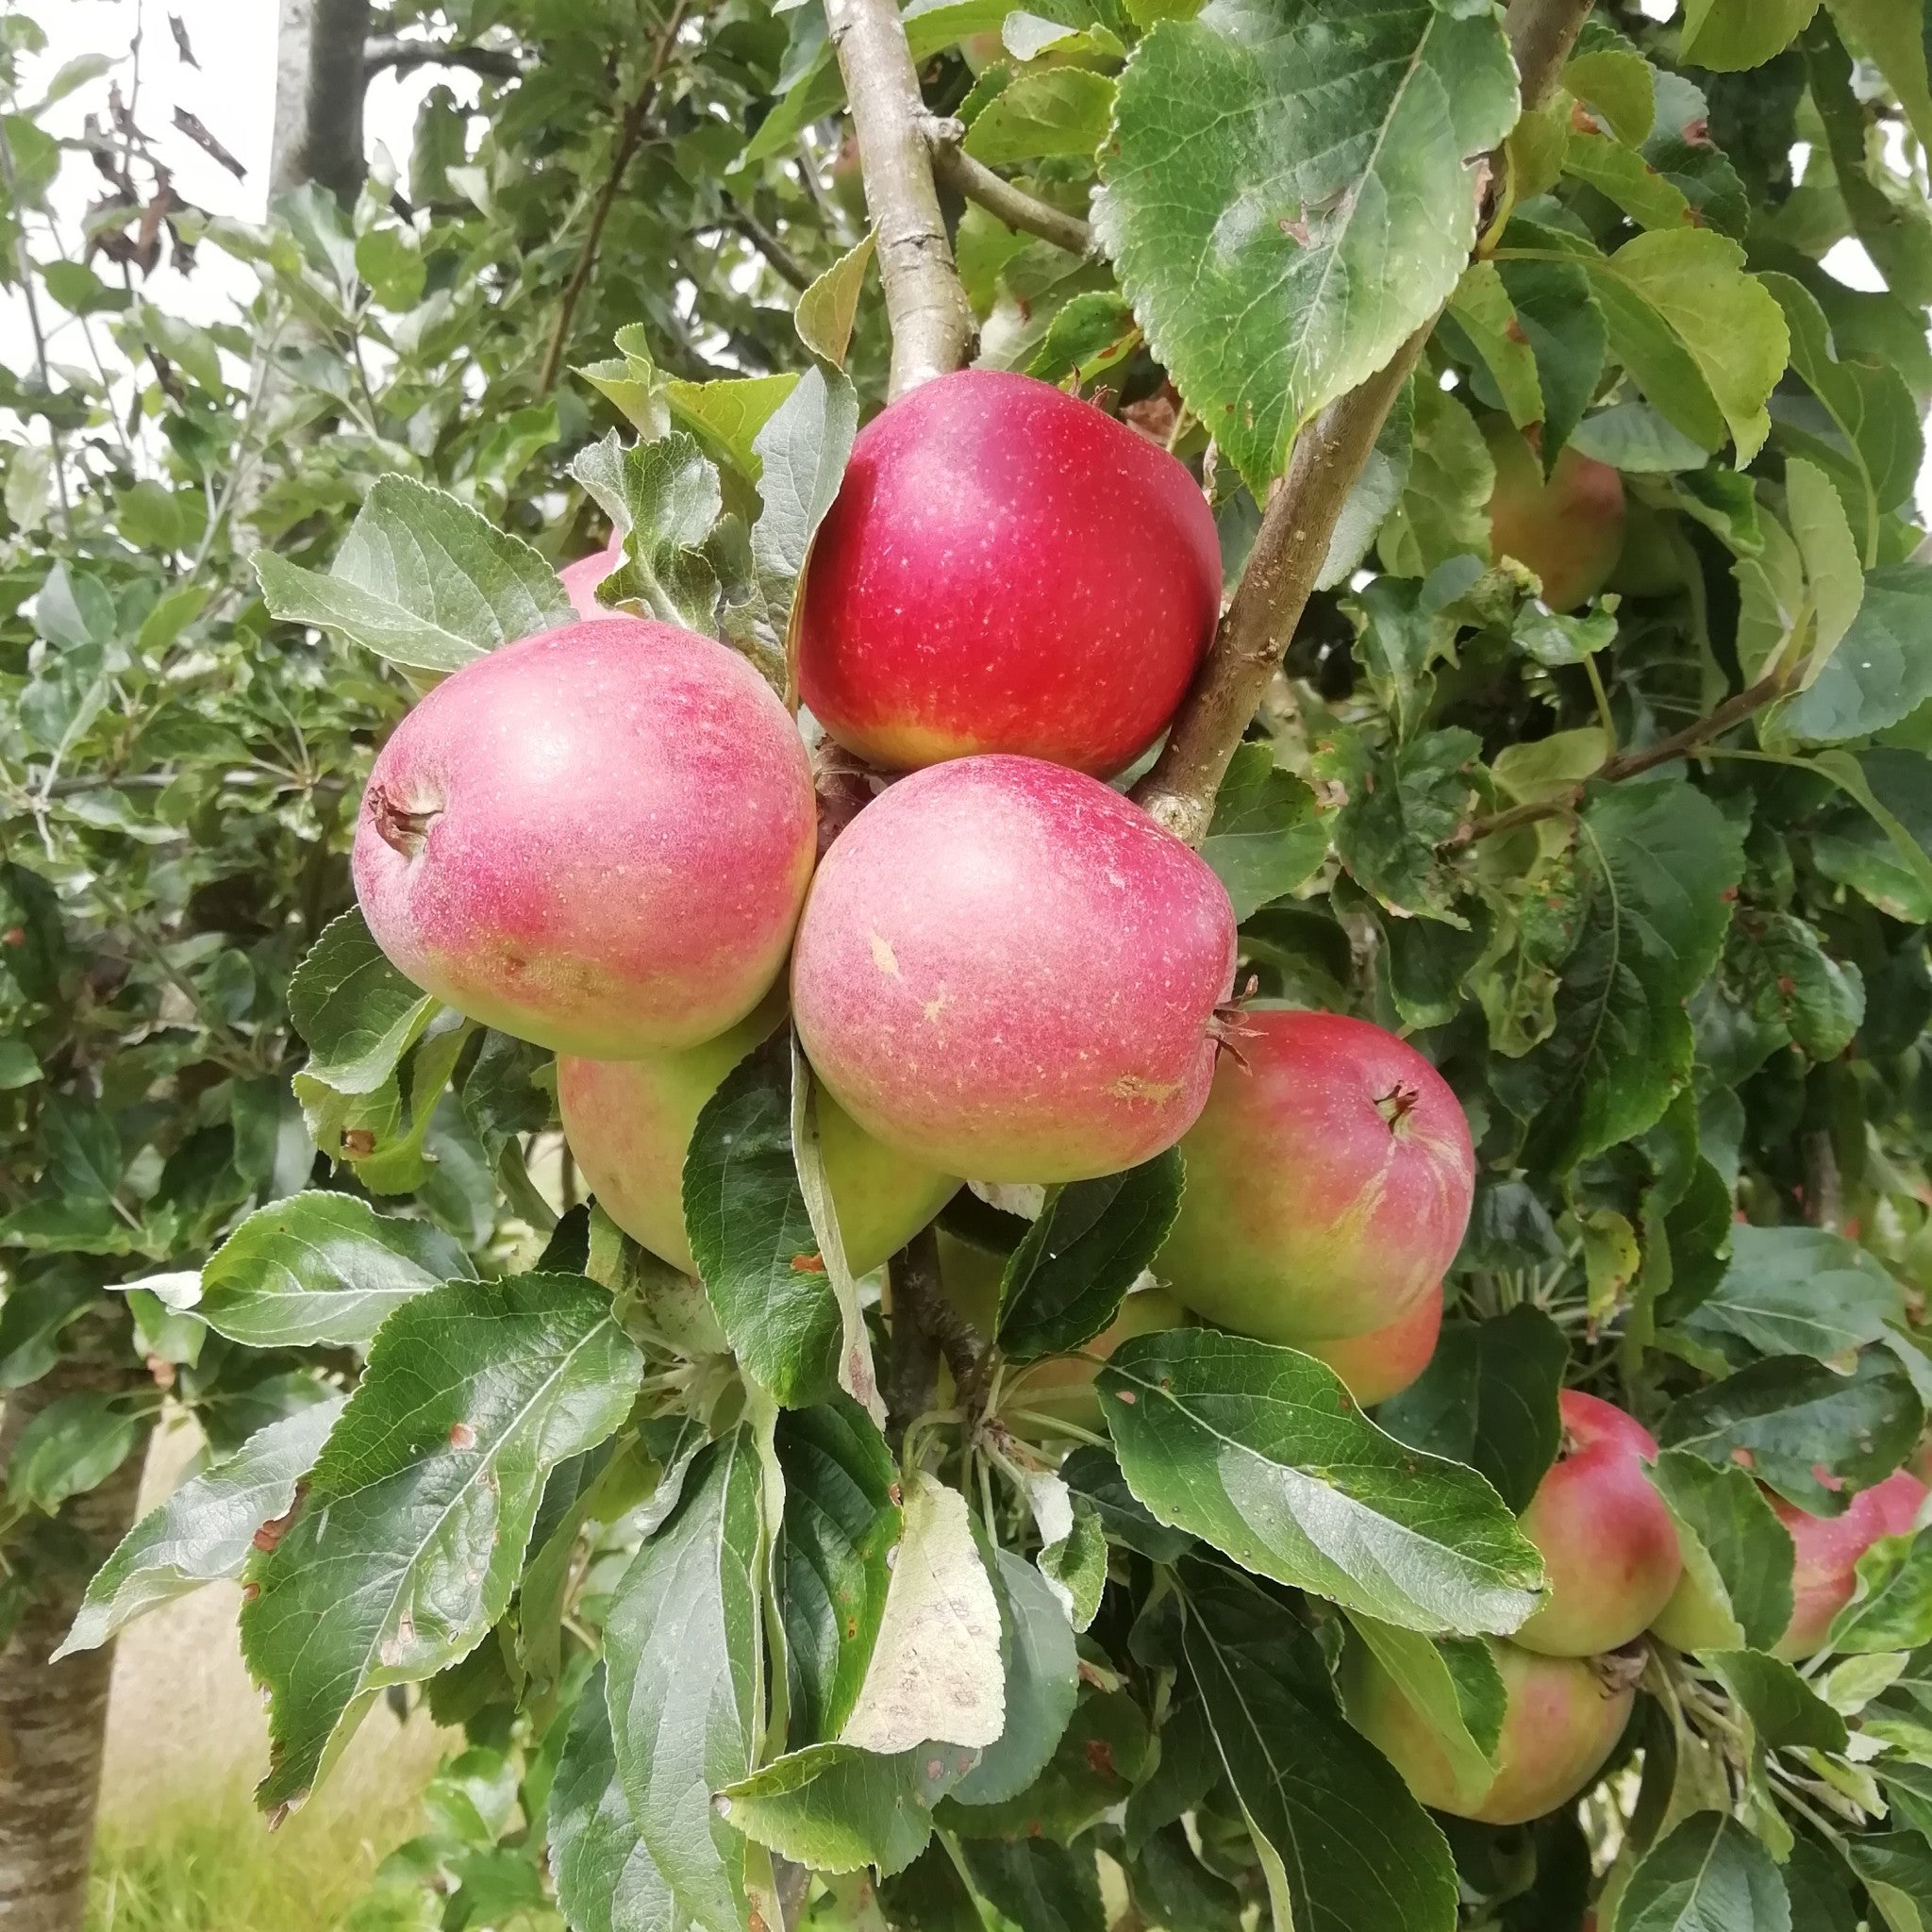 George Cave apple tree